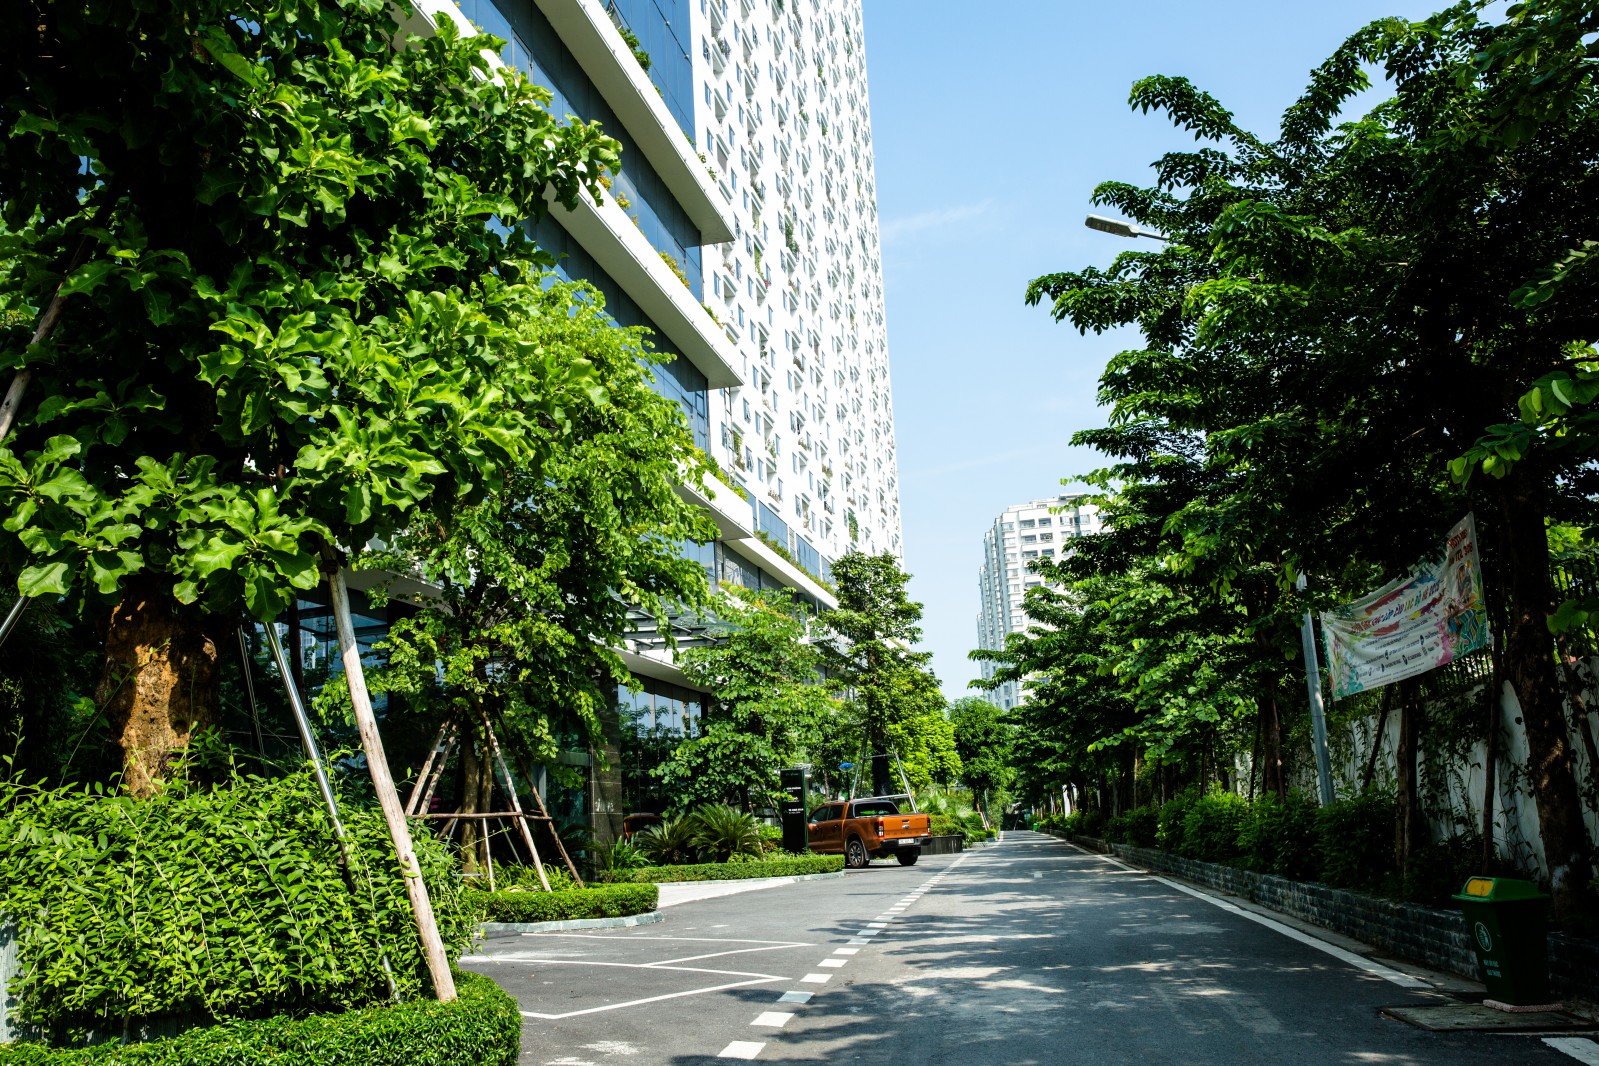 Bài dự thi Nơi tôi sống: Chạm tới yên bình nơi tòa nhà xanh giữa Thủ đô